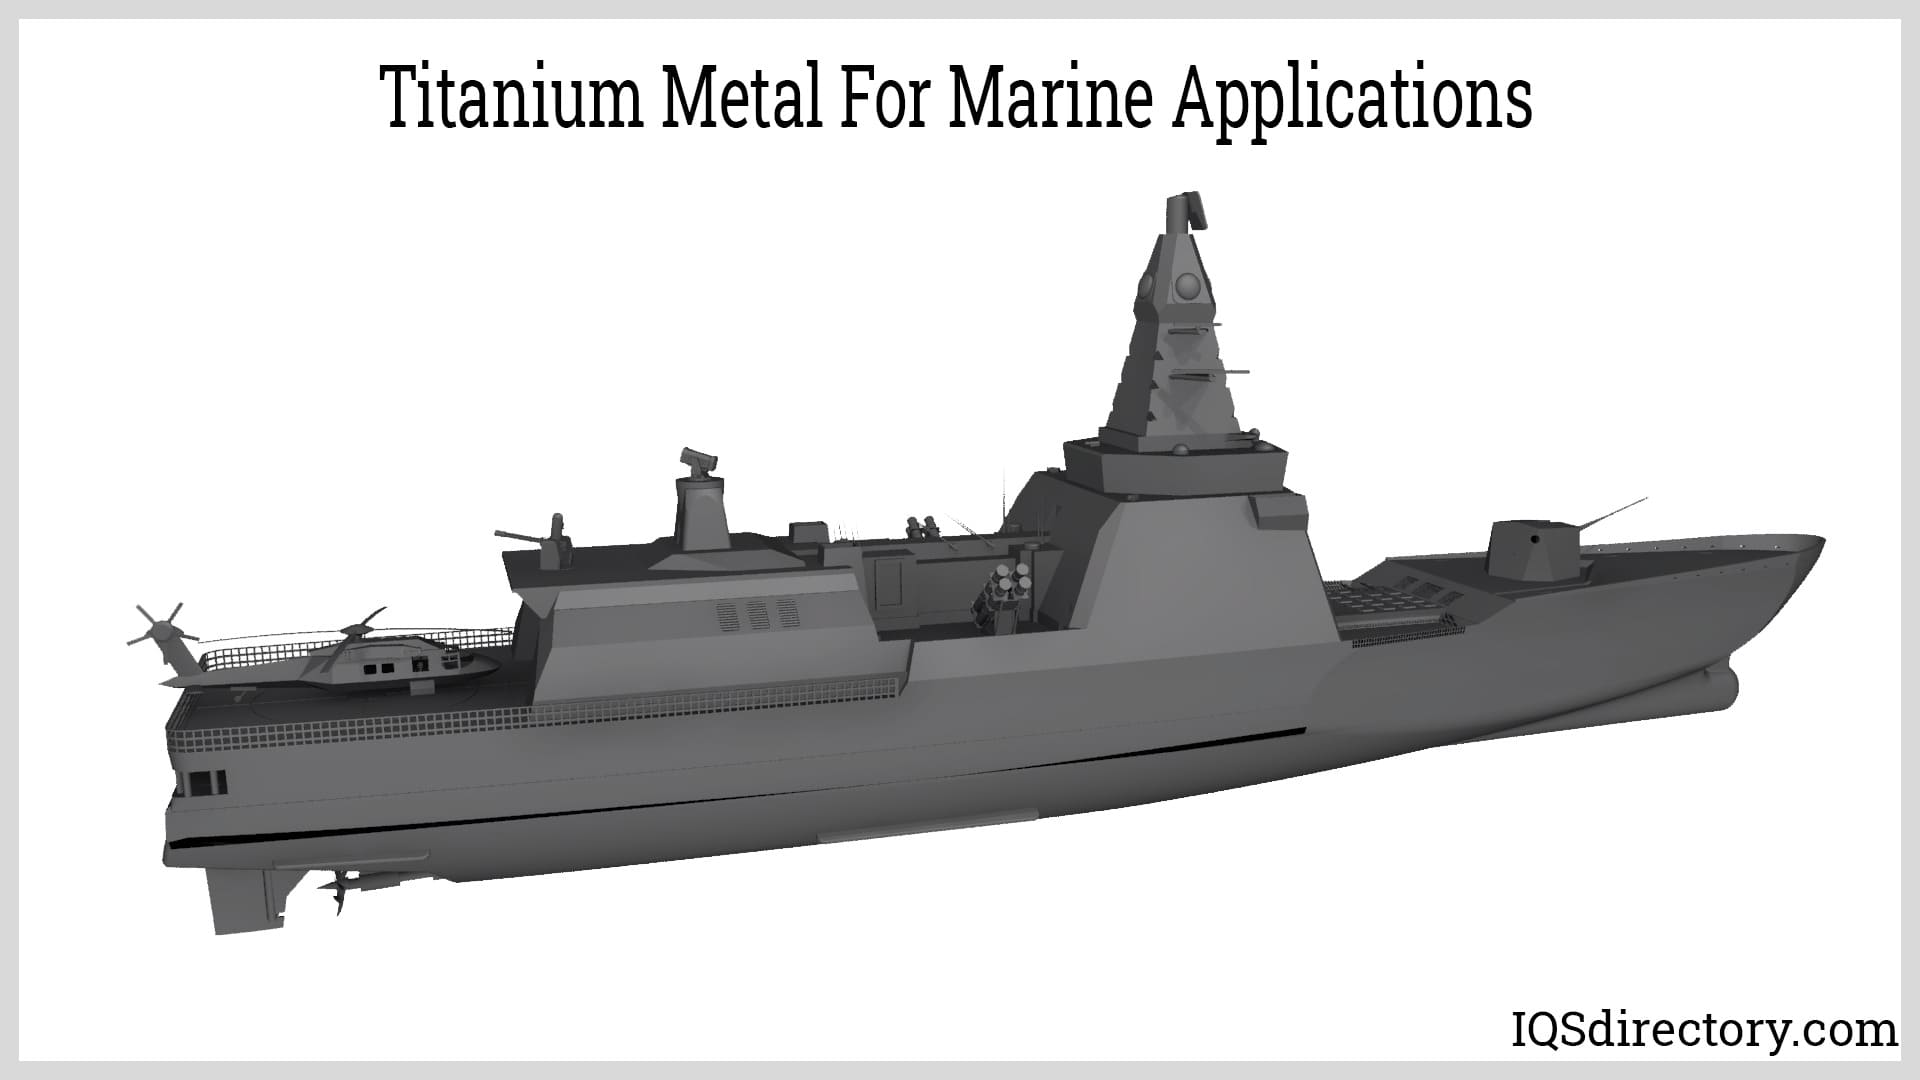 Titanium metal for marine applications